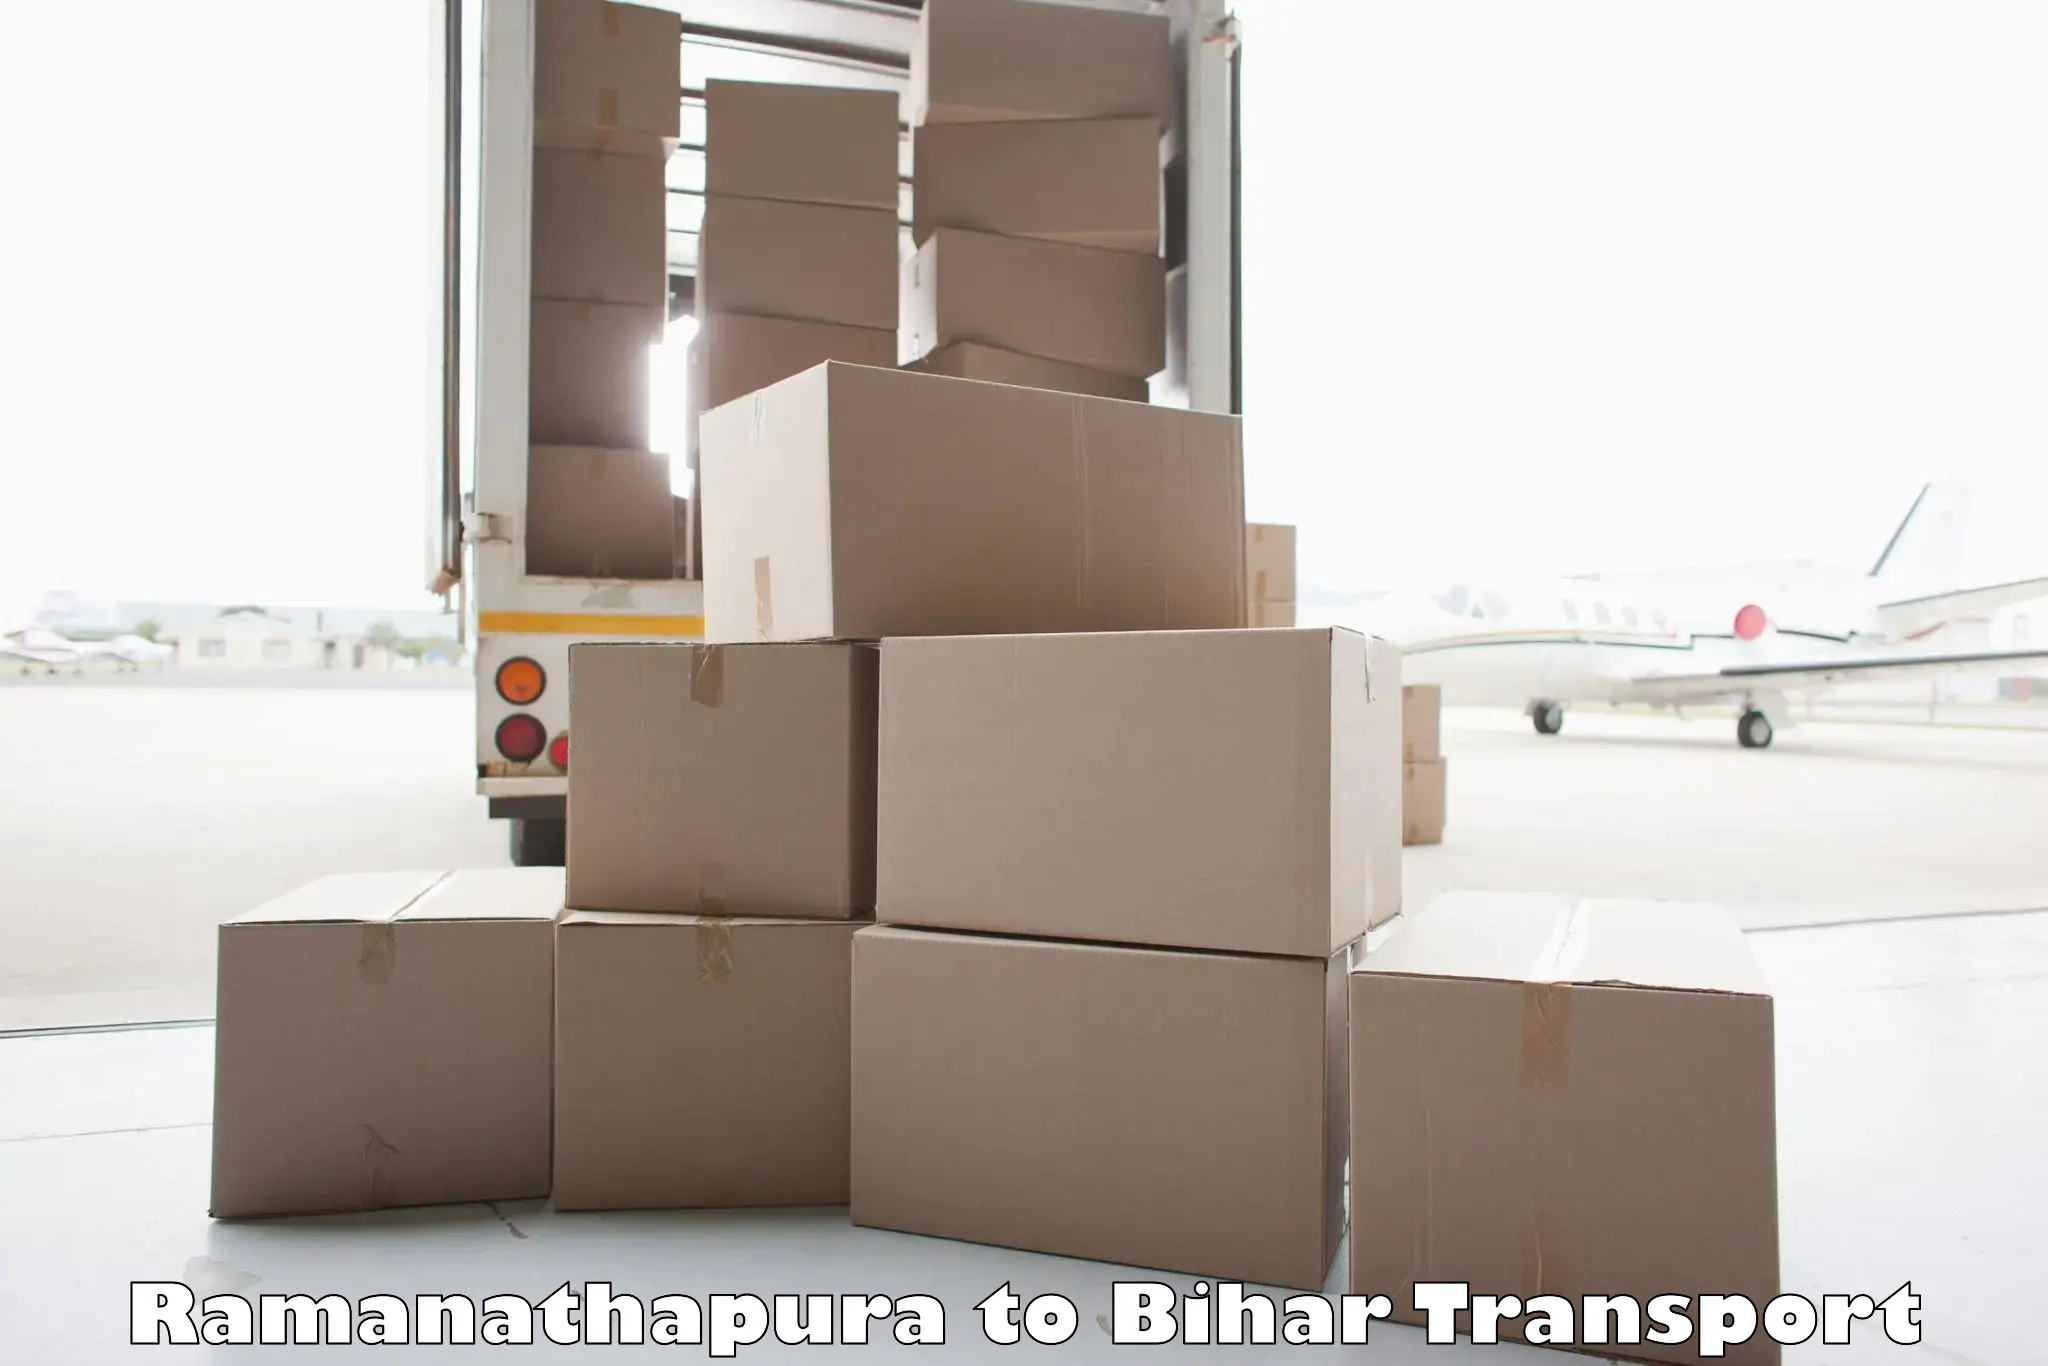 Daily parcel service transport Ramanathapura to Maharajganj Vaishali